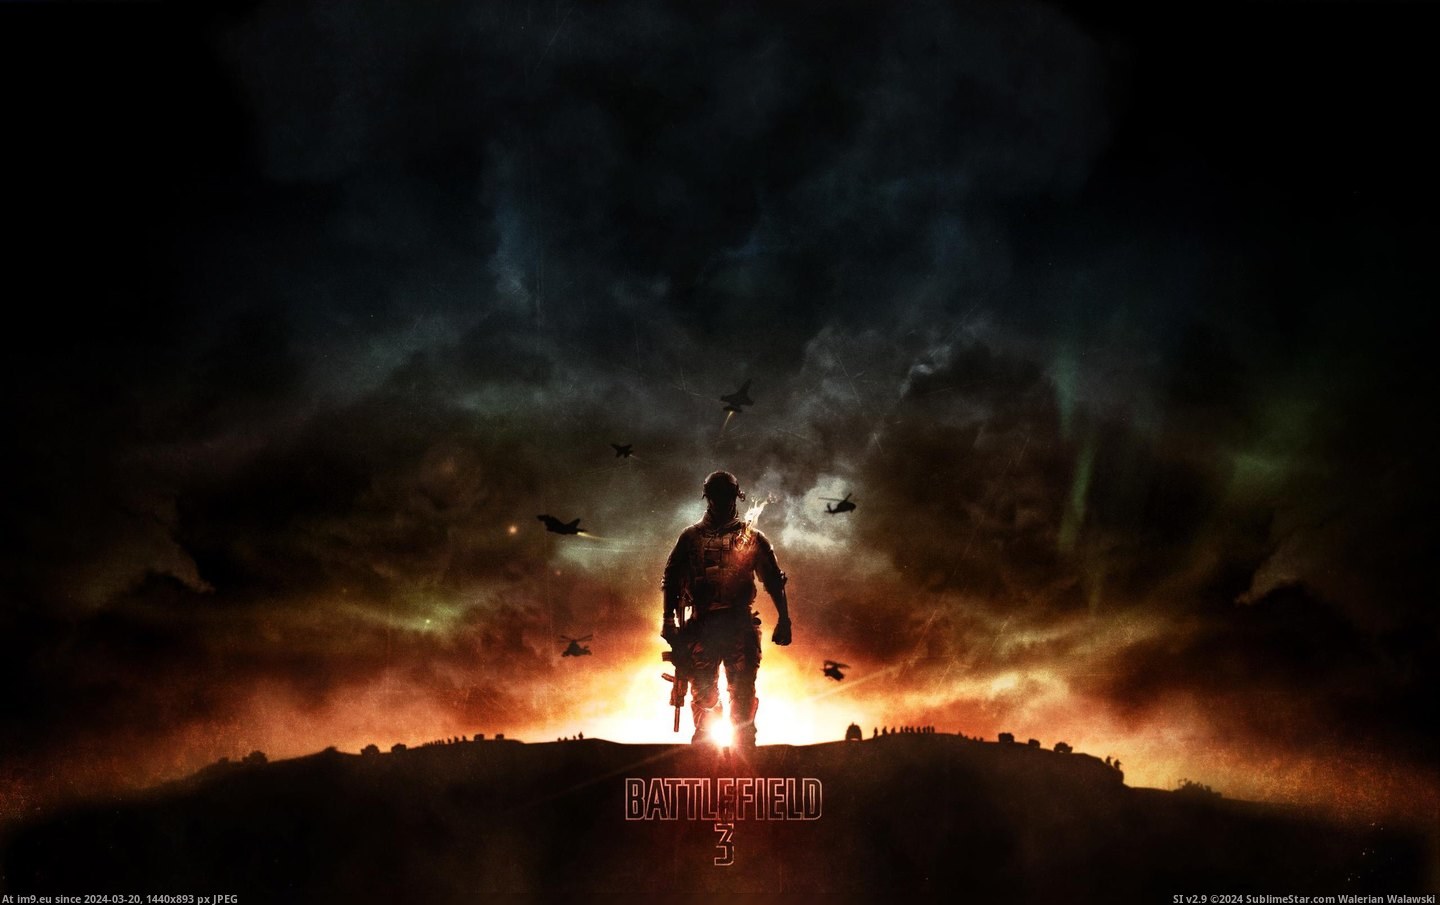 #Game #Battlefield #Video Video Game Battlefield 3 204405 Pic. (Bild von album Games Wallpapers))